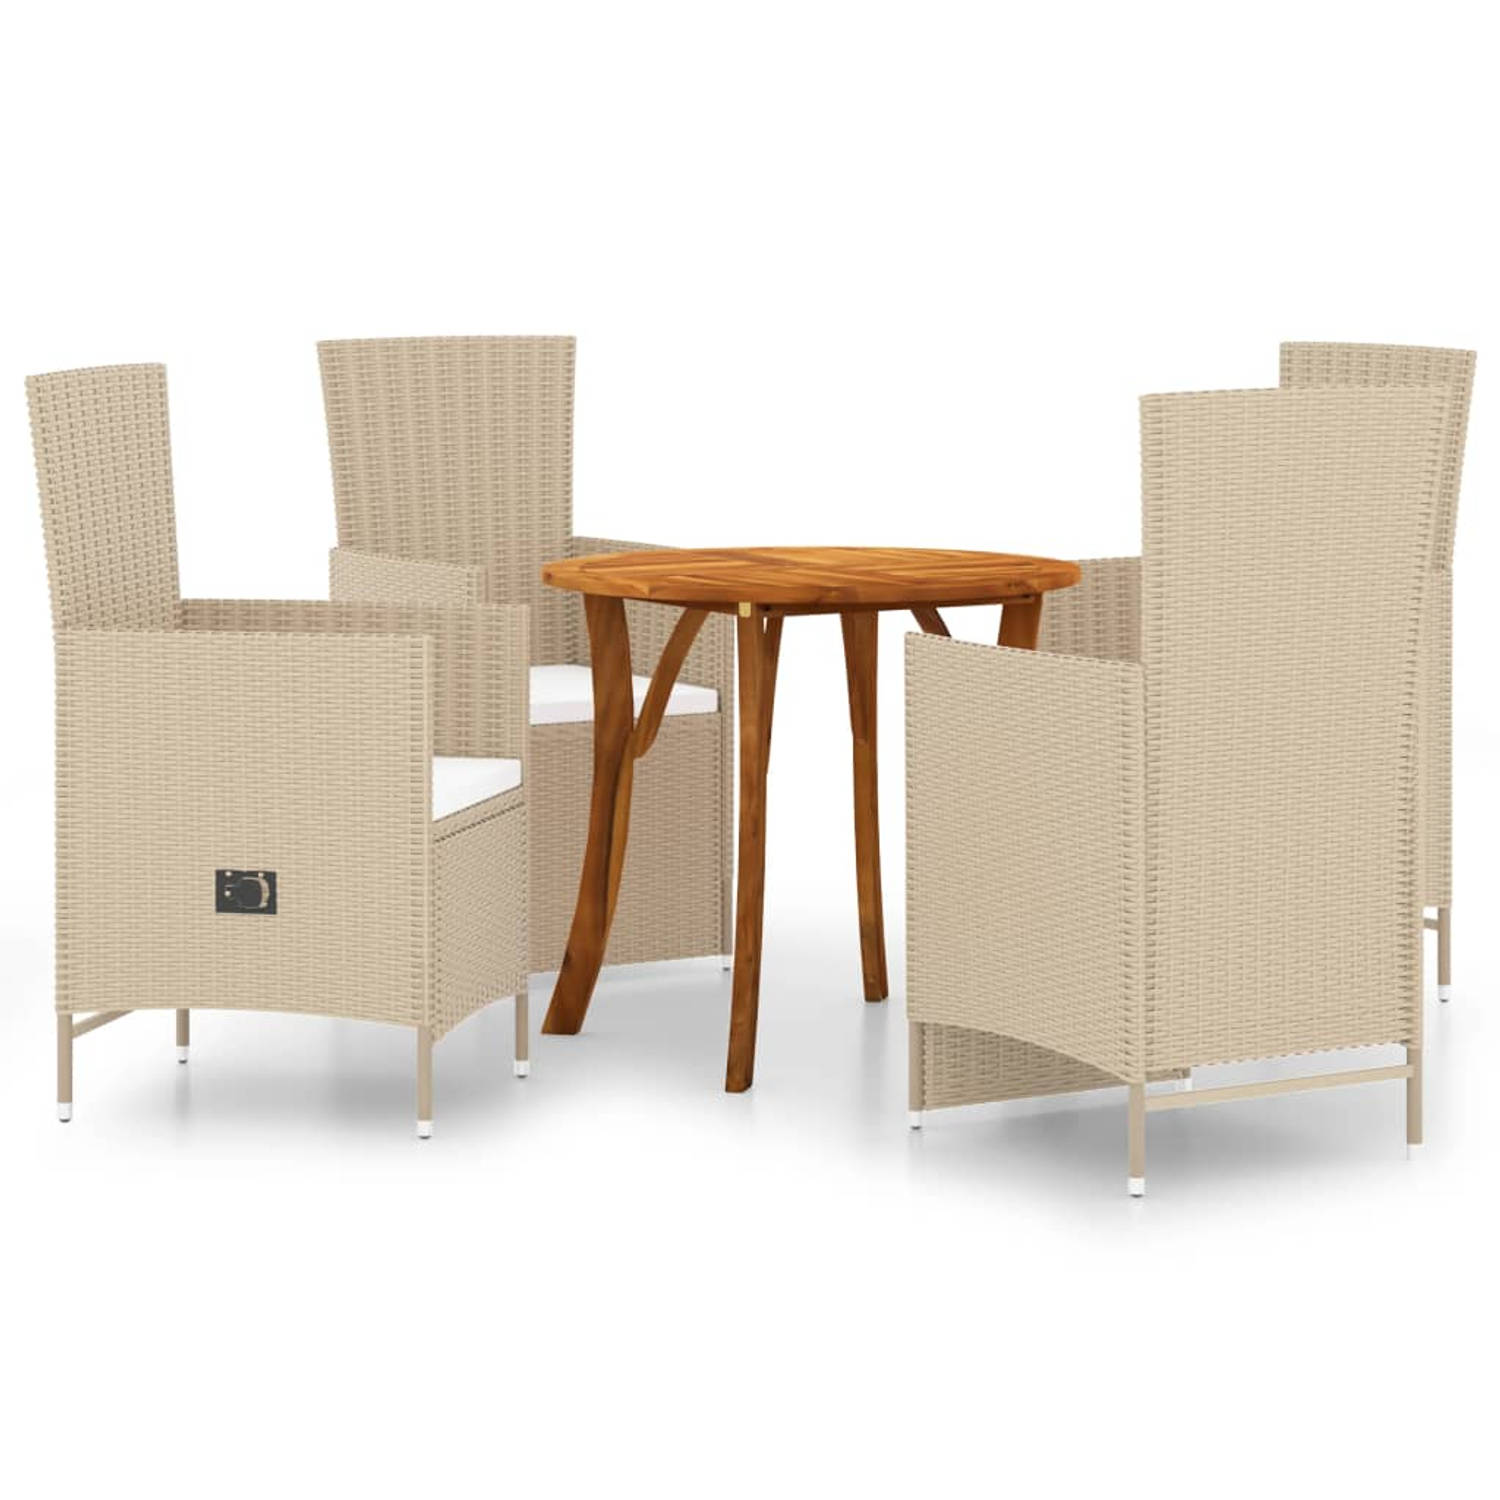 The Living Store Tuinset - Acaciahouten tafel 85x75 cm - Beige rieten stoelen - Verstelbaar - Incl - kussens